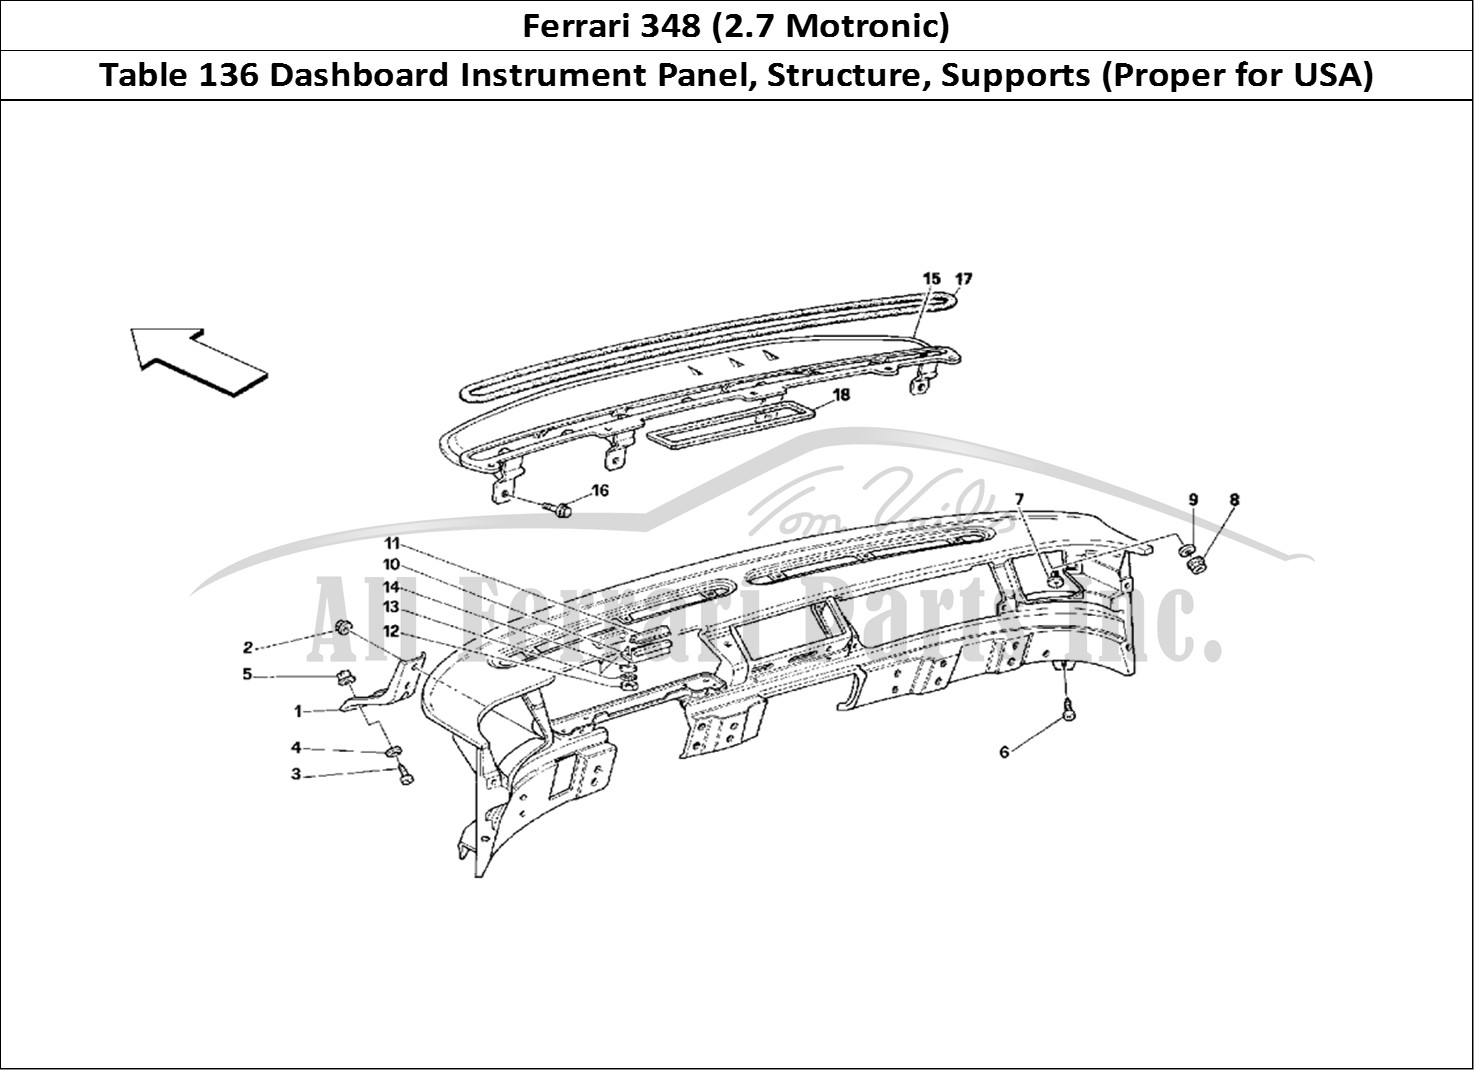 Ferrari Parts Ferrari 348 (2.7 Motronic) Page 136 Dashboard - Structure and